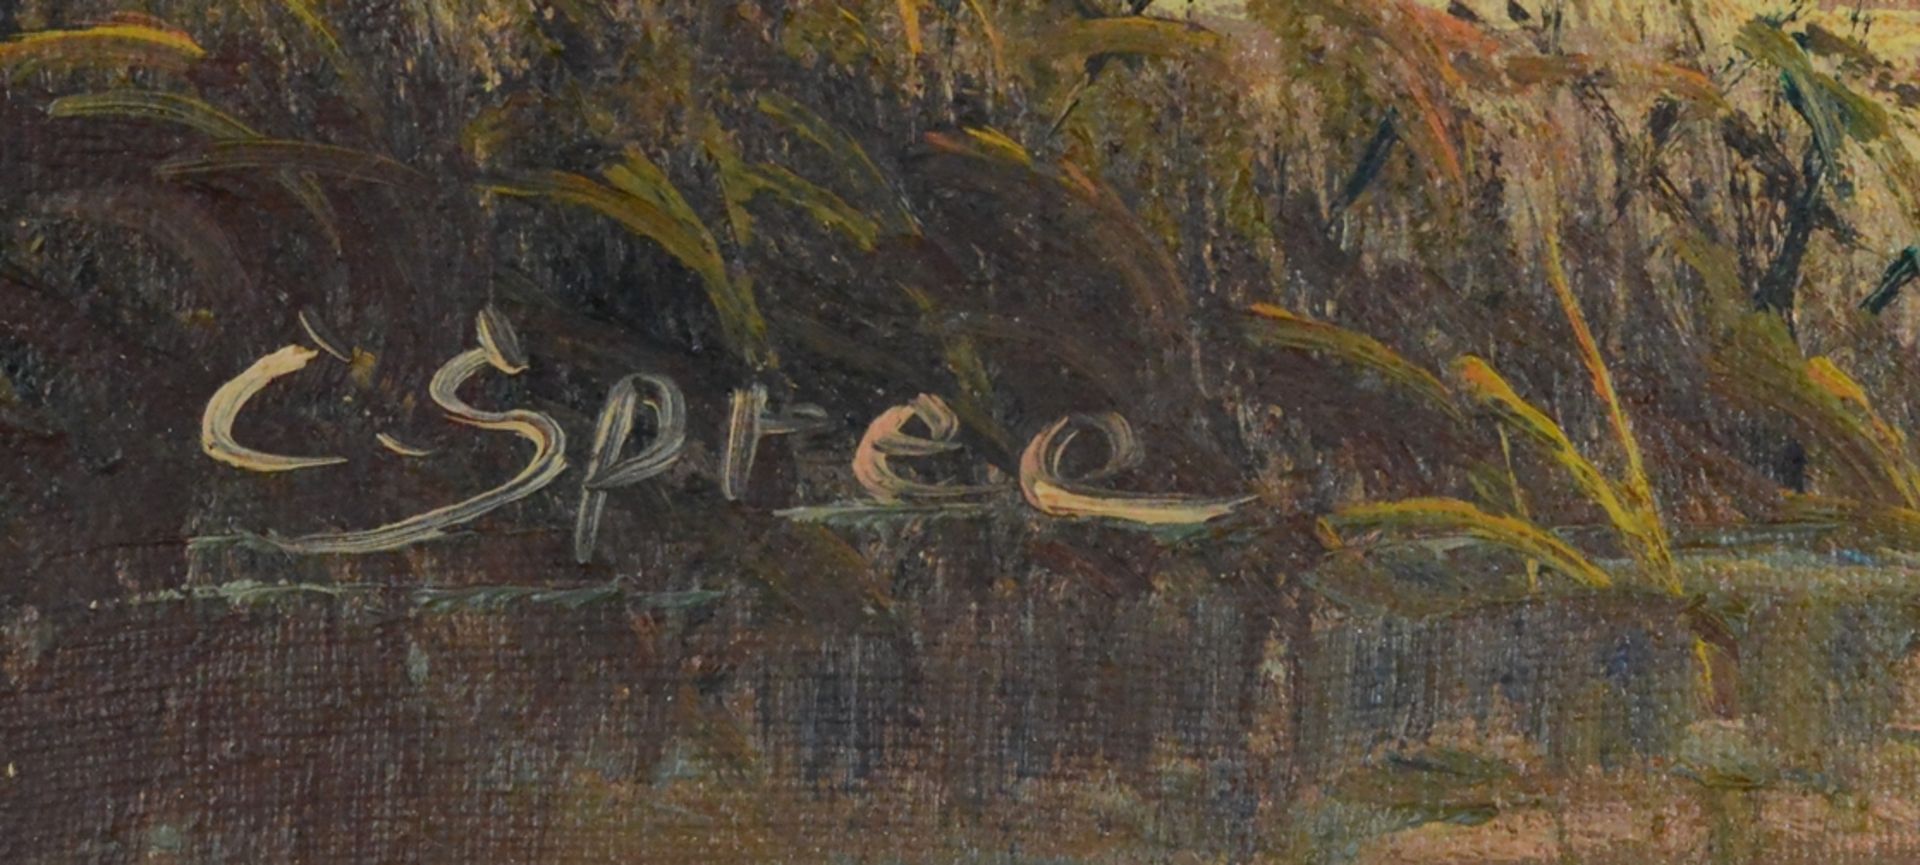 Spree, Carol (1907-?), "Anglerboot am Seeufer" mit kleiner Hütte vor Bergpanorama, Öl auf Leinwand, - Bild 3 aus 4